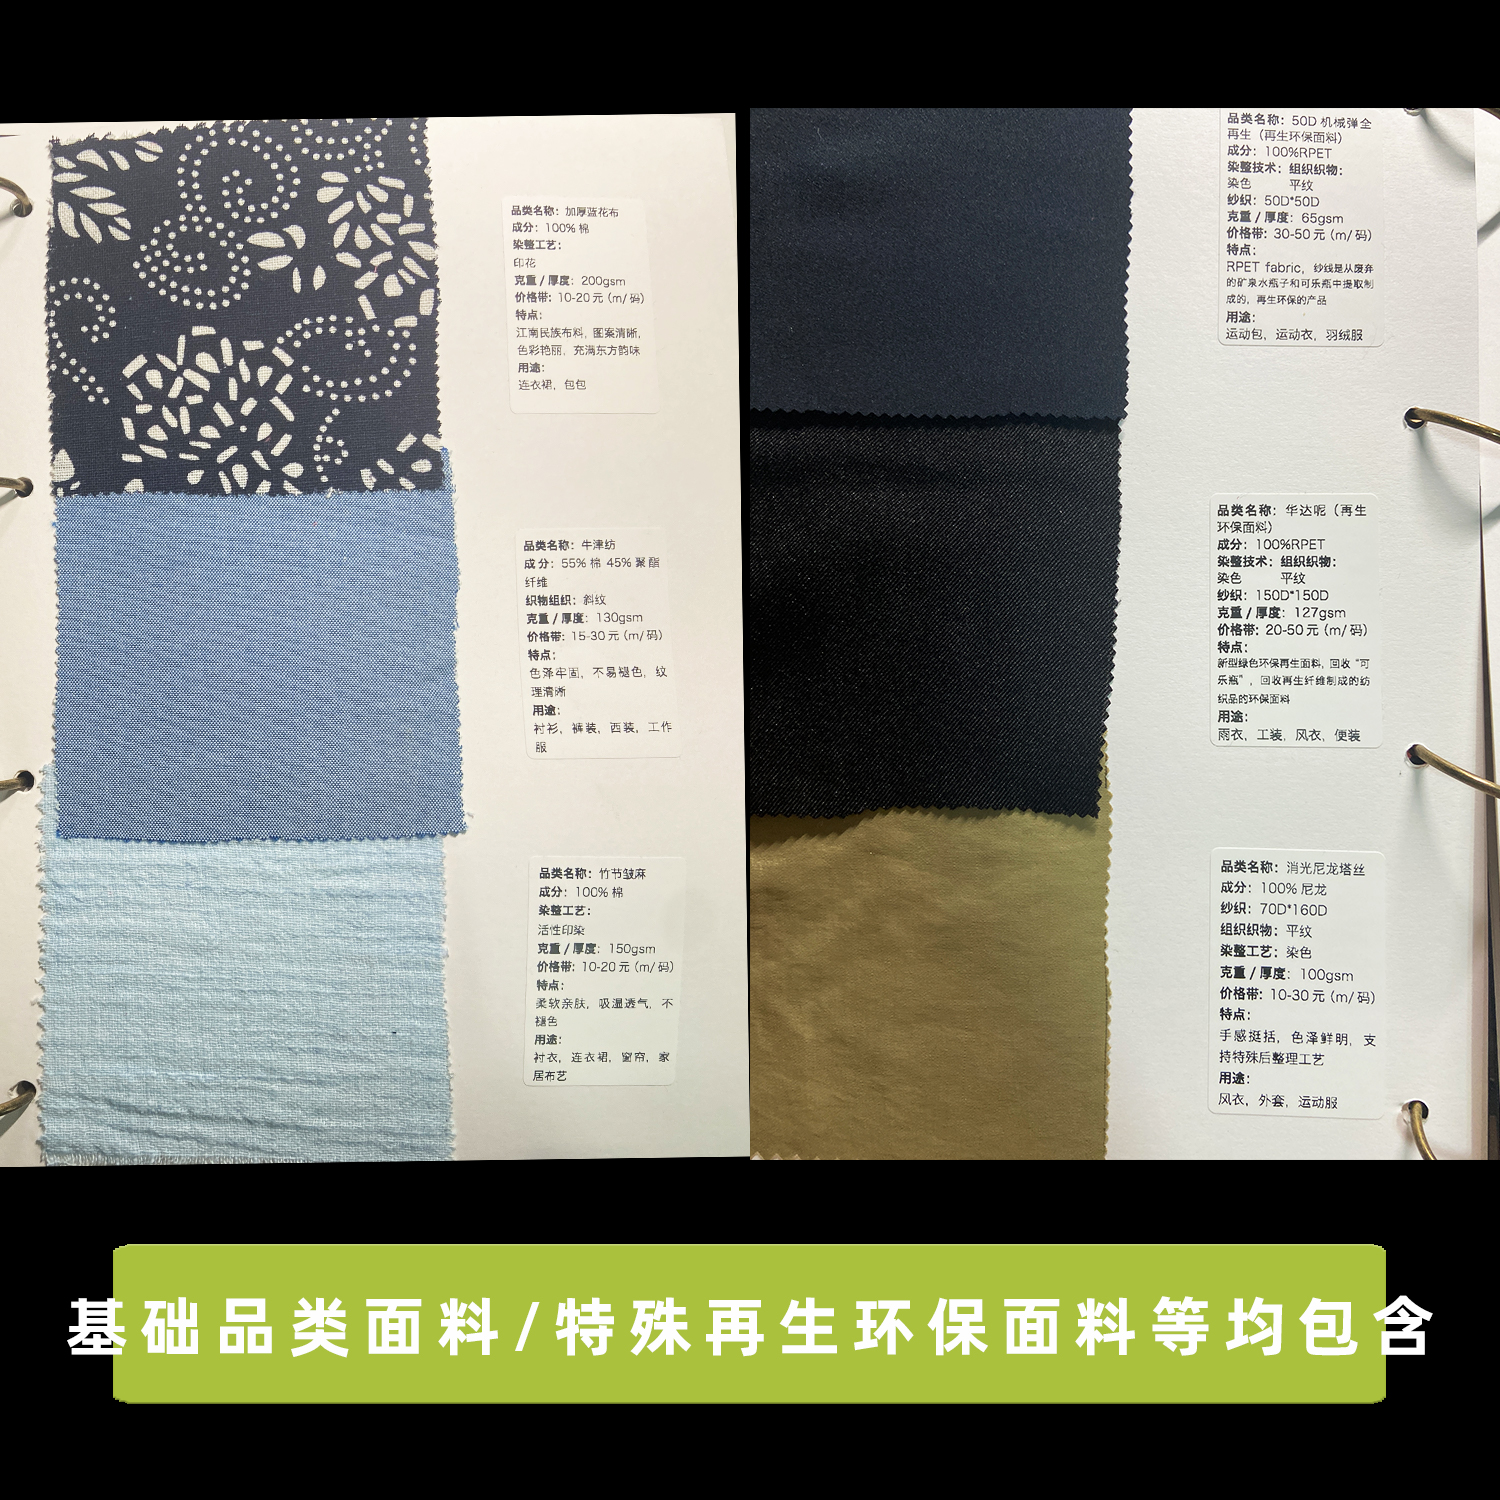 面料小样册各种各样面料品类齐全棉麻丝毛化纤皮革针织蕾丝合集-图2